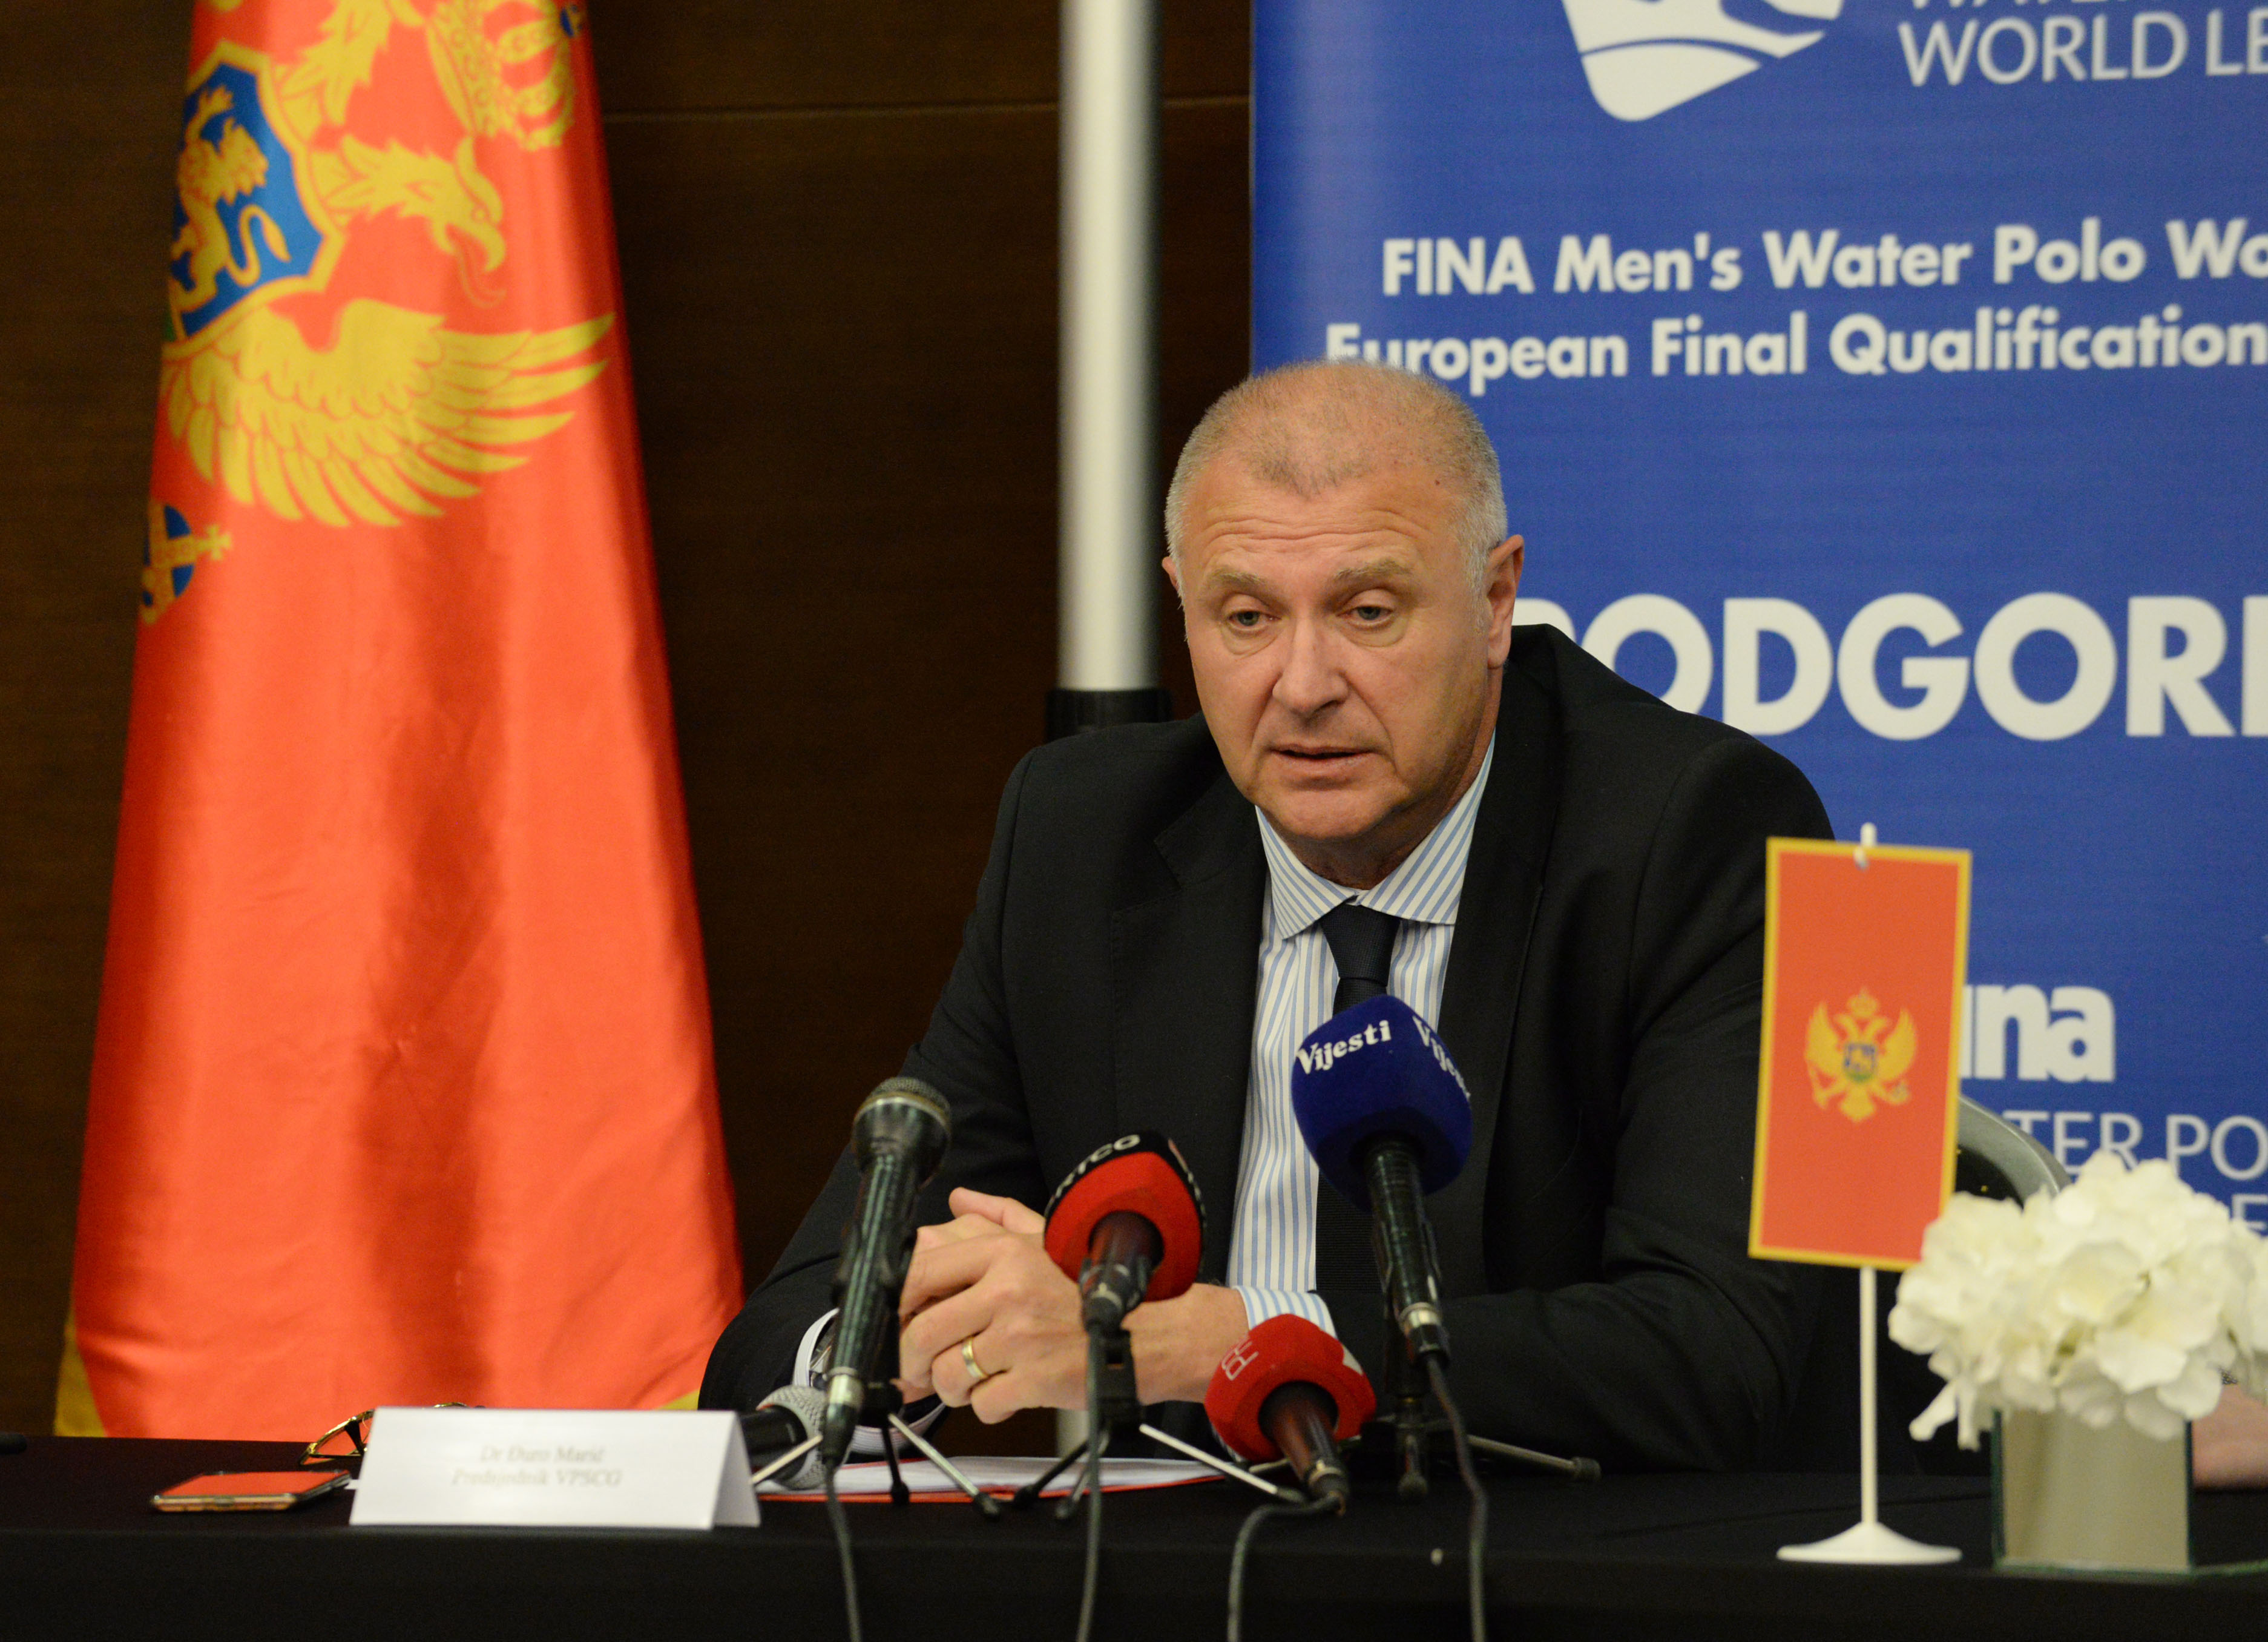 Podgorica domaćin dva velika vaterpolo takmičenja; Vuković: Ugostićemo svjetsku vaterpolo elitu